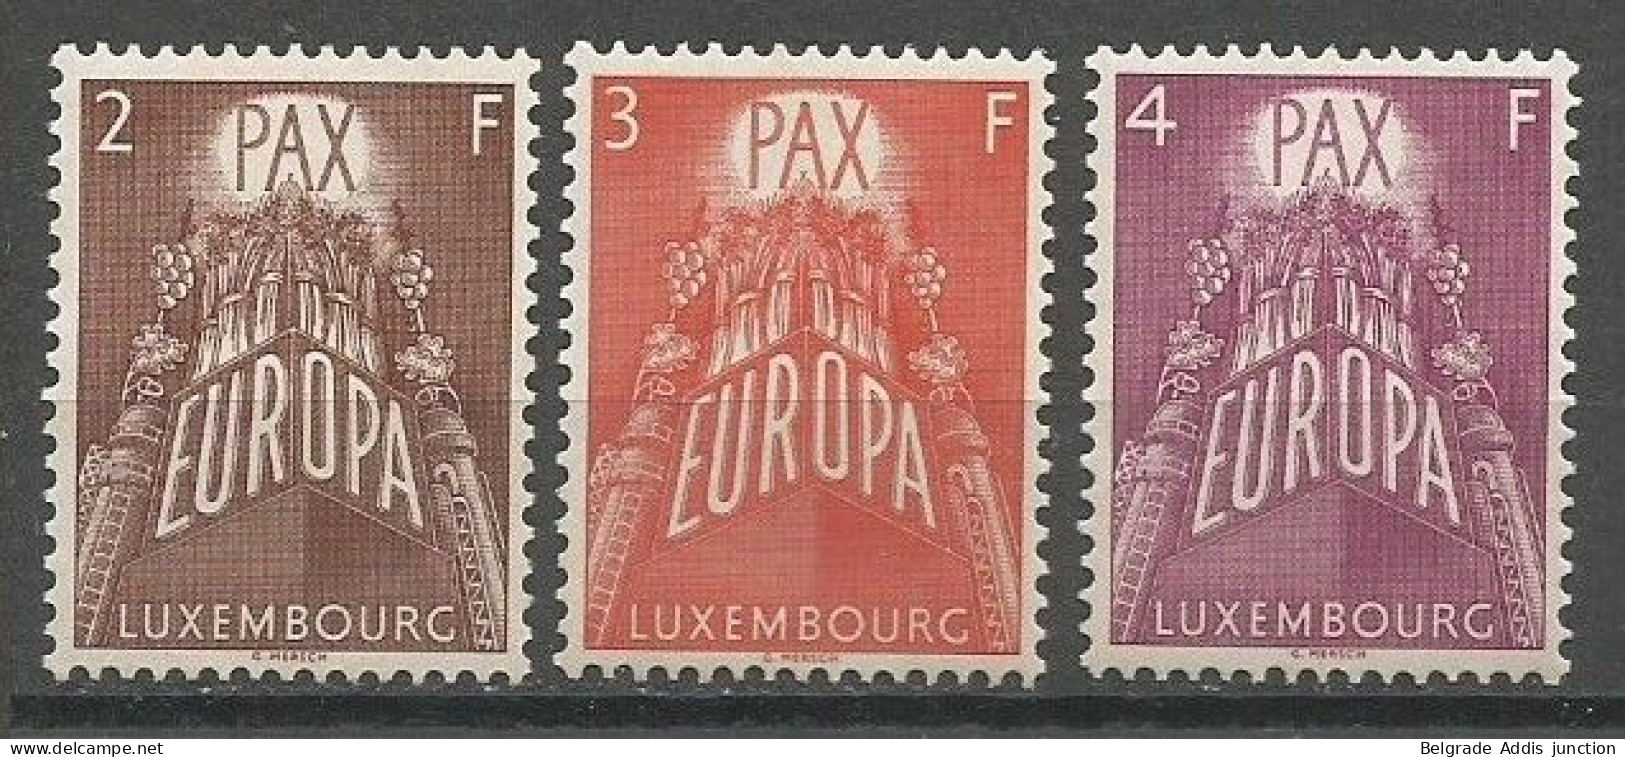 Luxembourg Luxemburg Mi.572/74 Complete Set Postfrisch / MNH / ** 1957 Europa - 1957